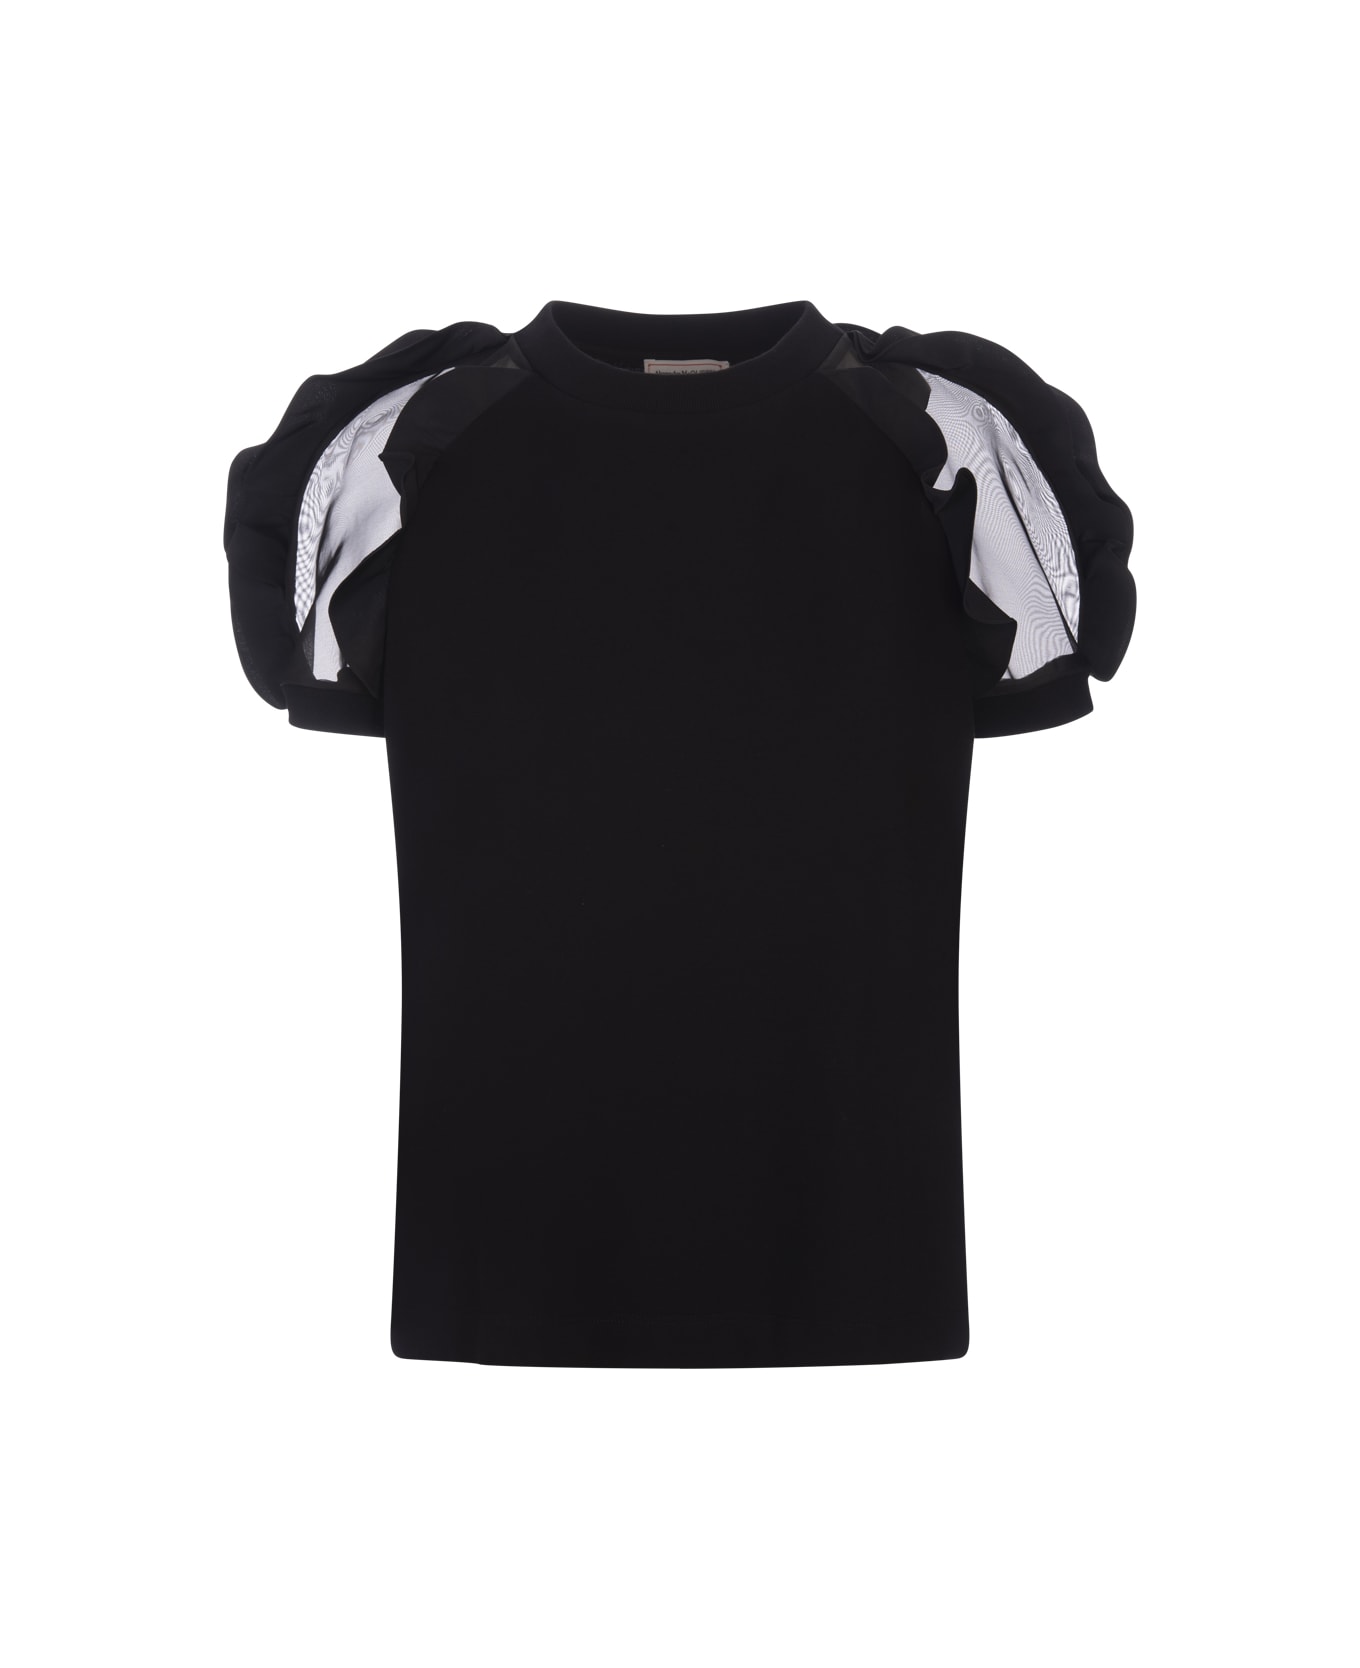 Alexander McQueen Black T-shirt With Ruffles Detail - Black